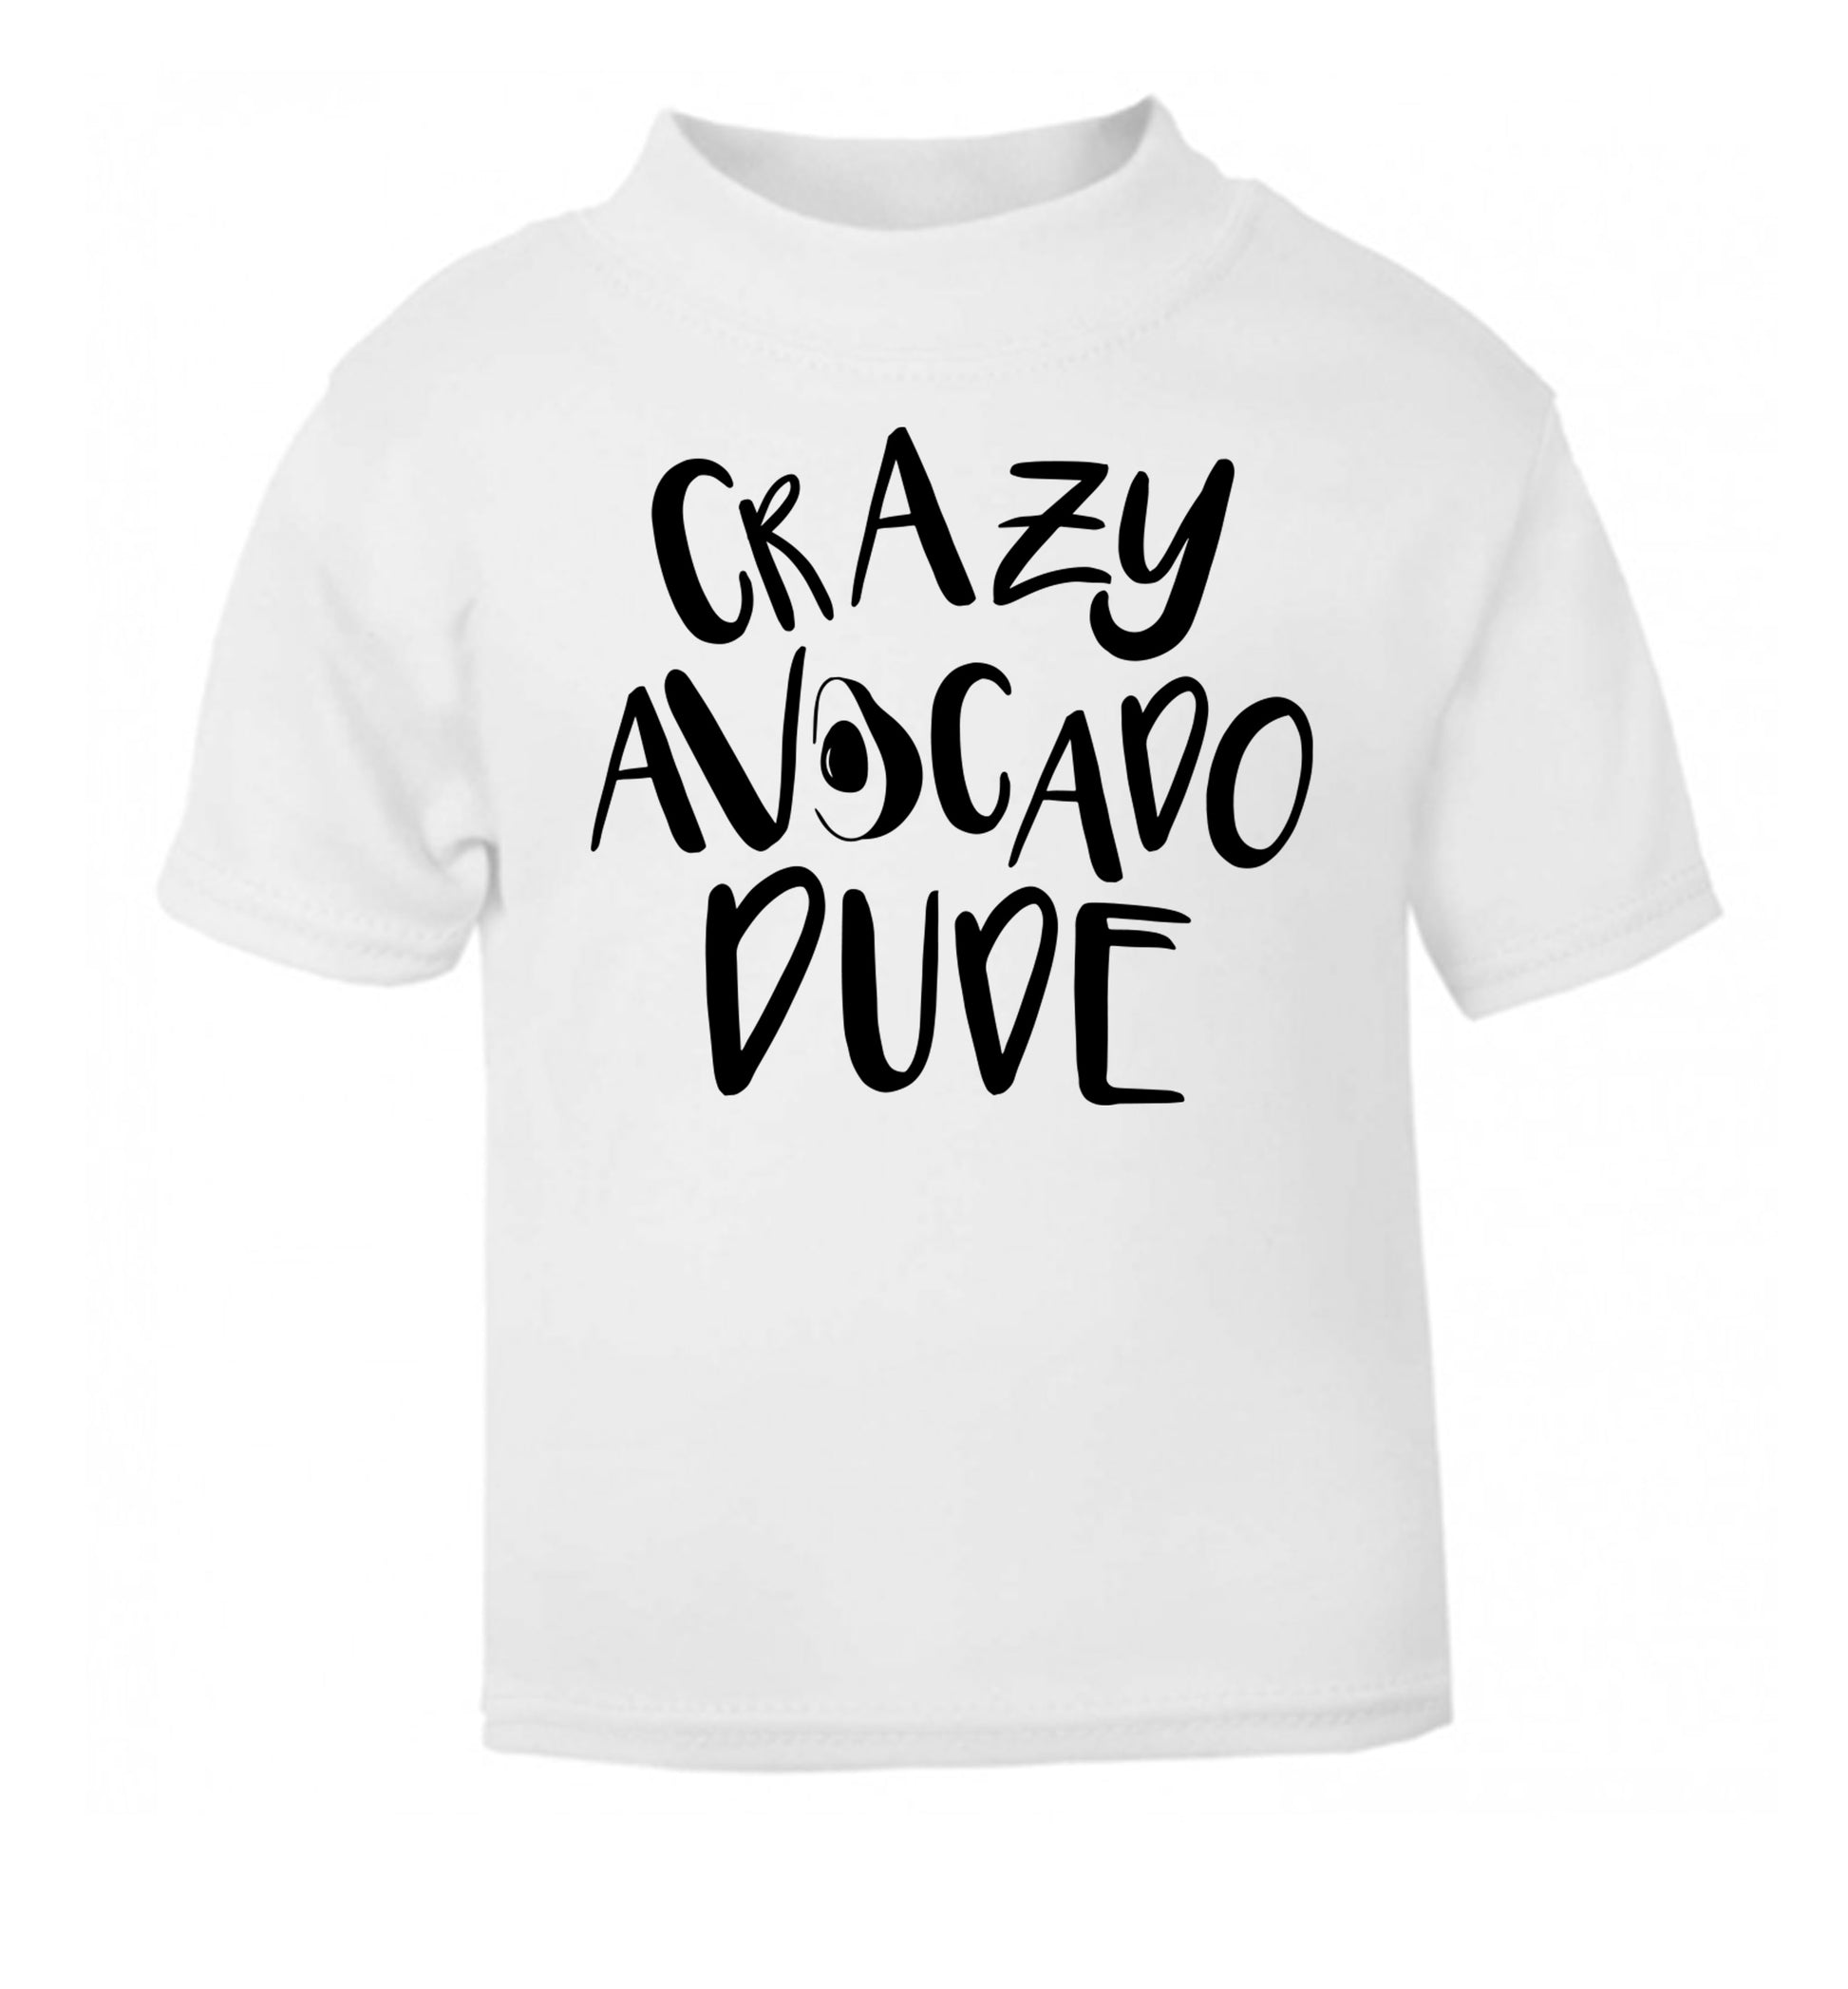 Crazy avocado dude white Baby Toddler Tshirt 2 Years